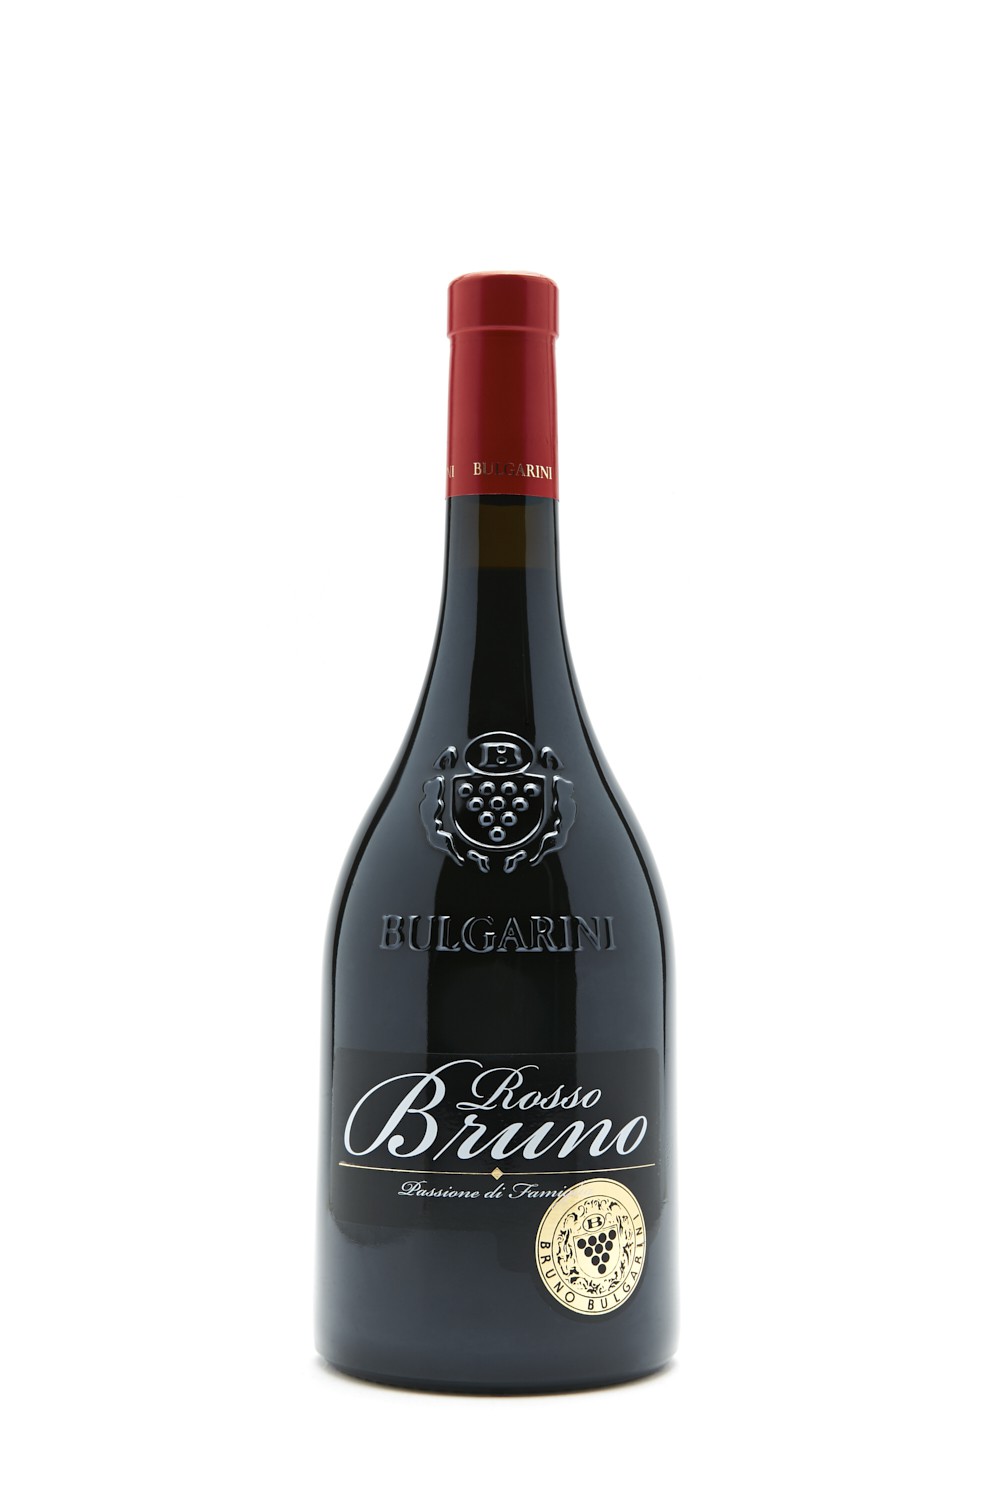 Bulgarini Rosso Bruno 2020 bei Senti kaufen | Italien aus Vini - Weine Online